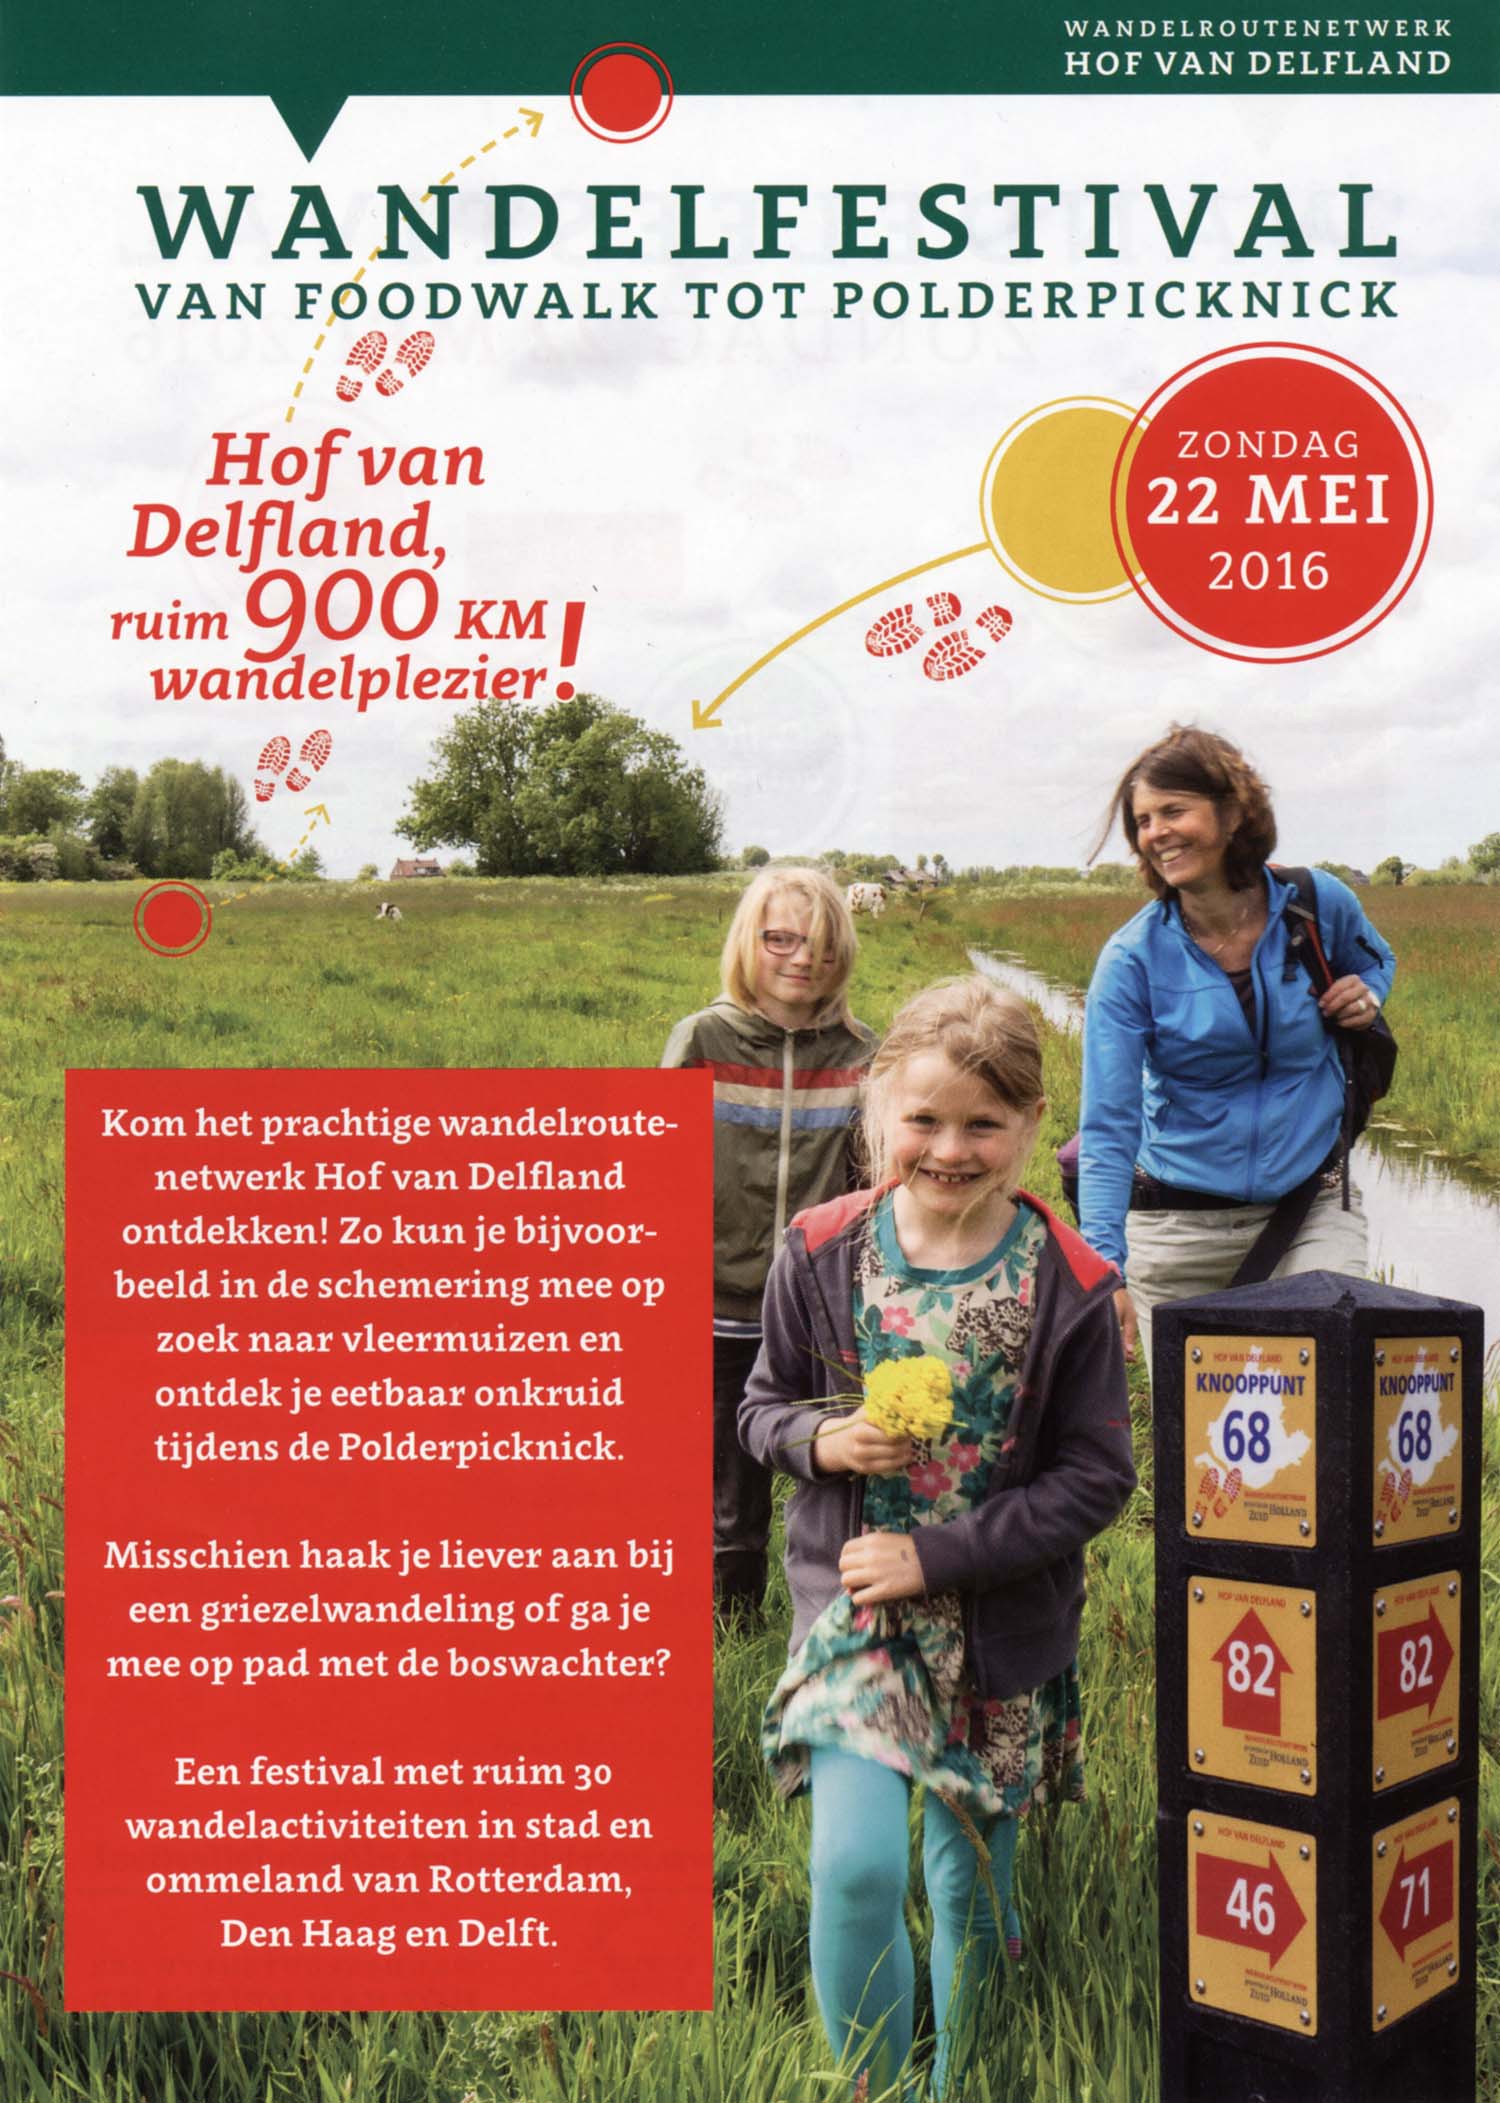 Wandelfestival Hof van Delfland - zondag 22 mei 2016